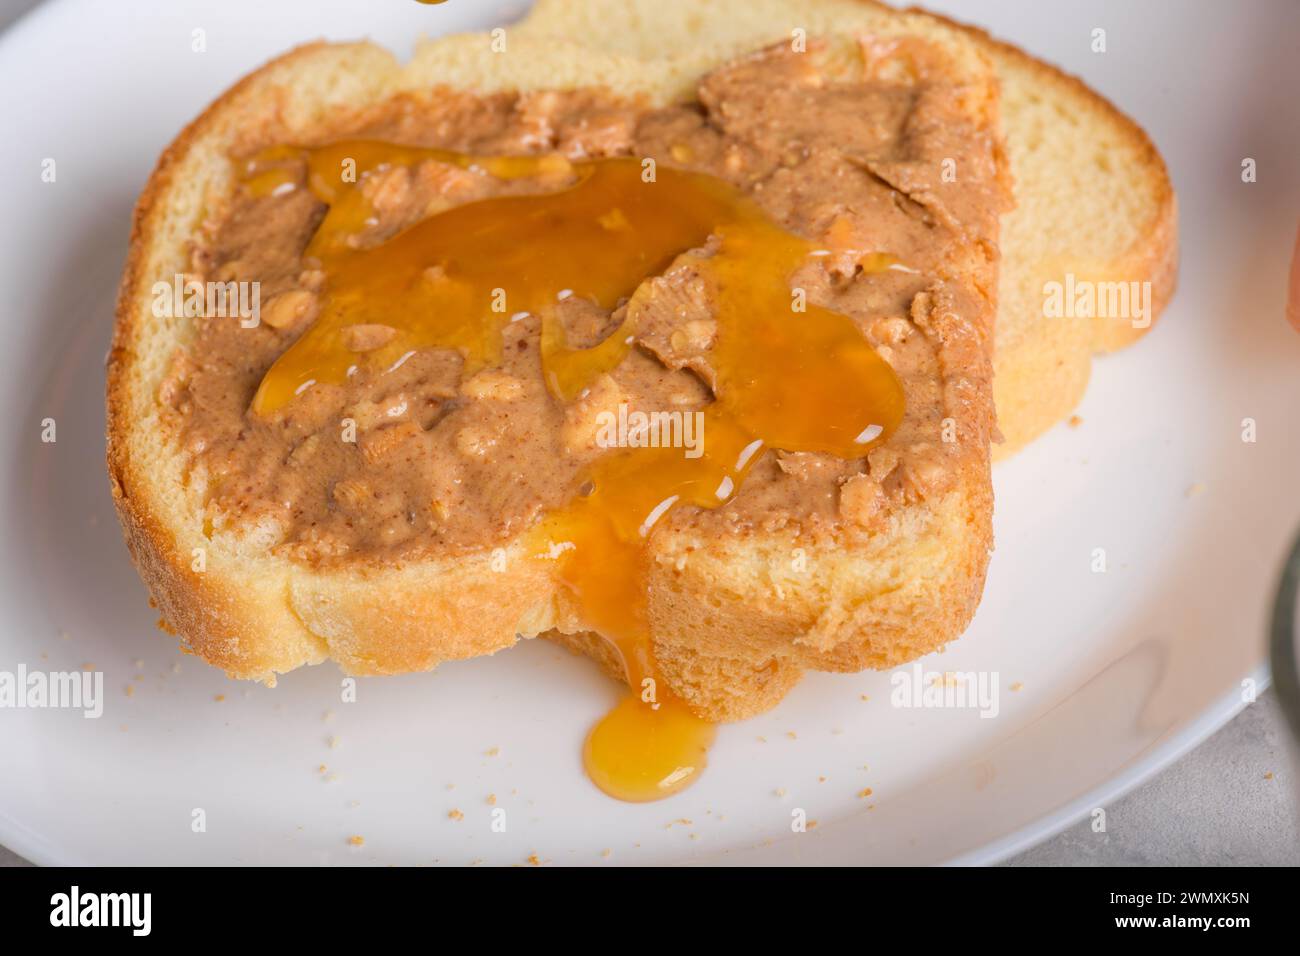 Sandwich avec miel et beurre d'arachide étalant sur un morceau de pain blanc toast, gros plan. Snack typique, style de vie alimentaire, vie domestique, américain b Banque D'Images